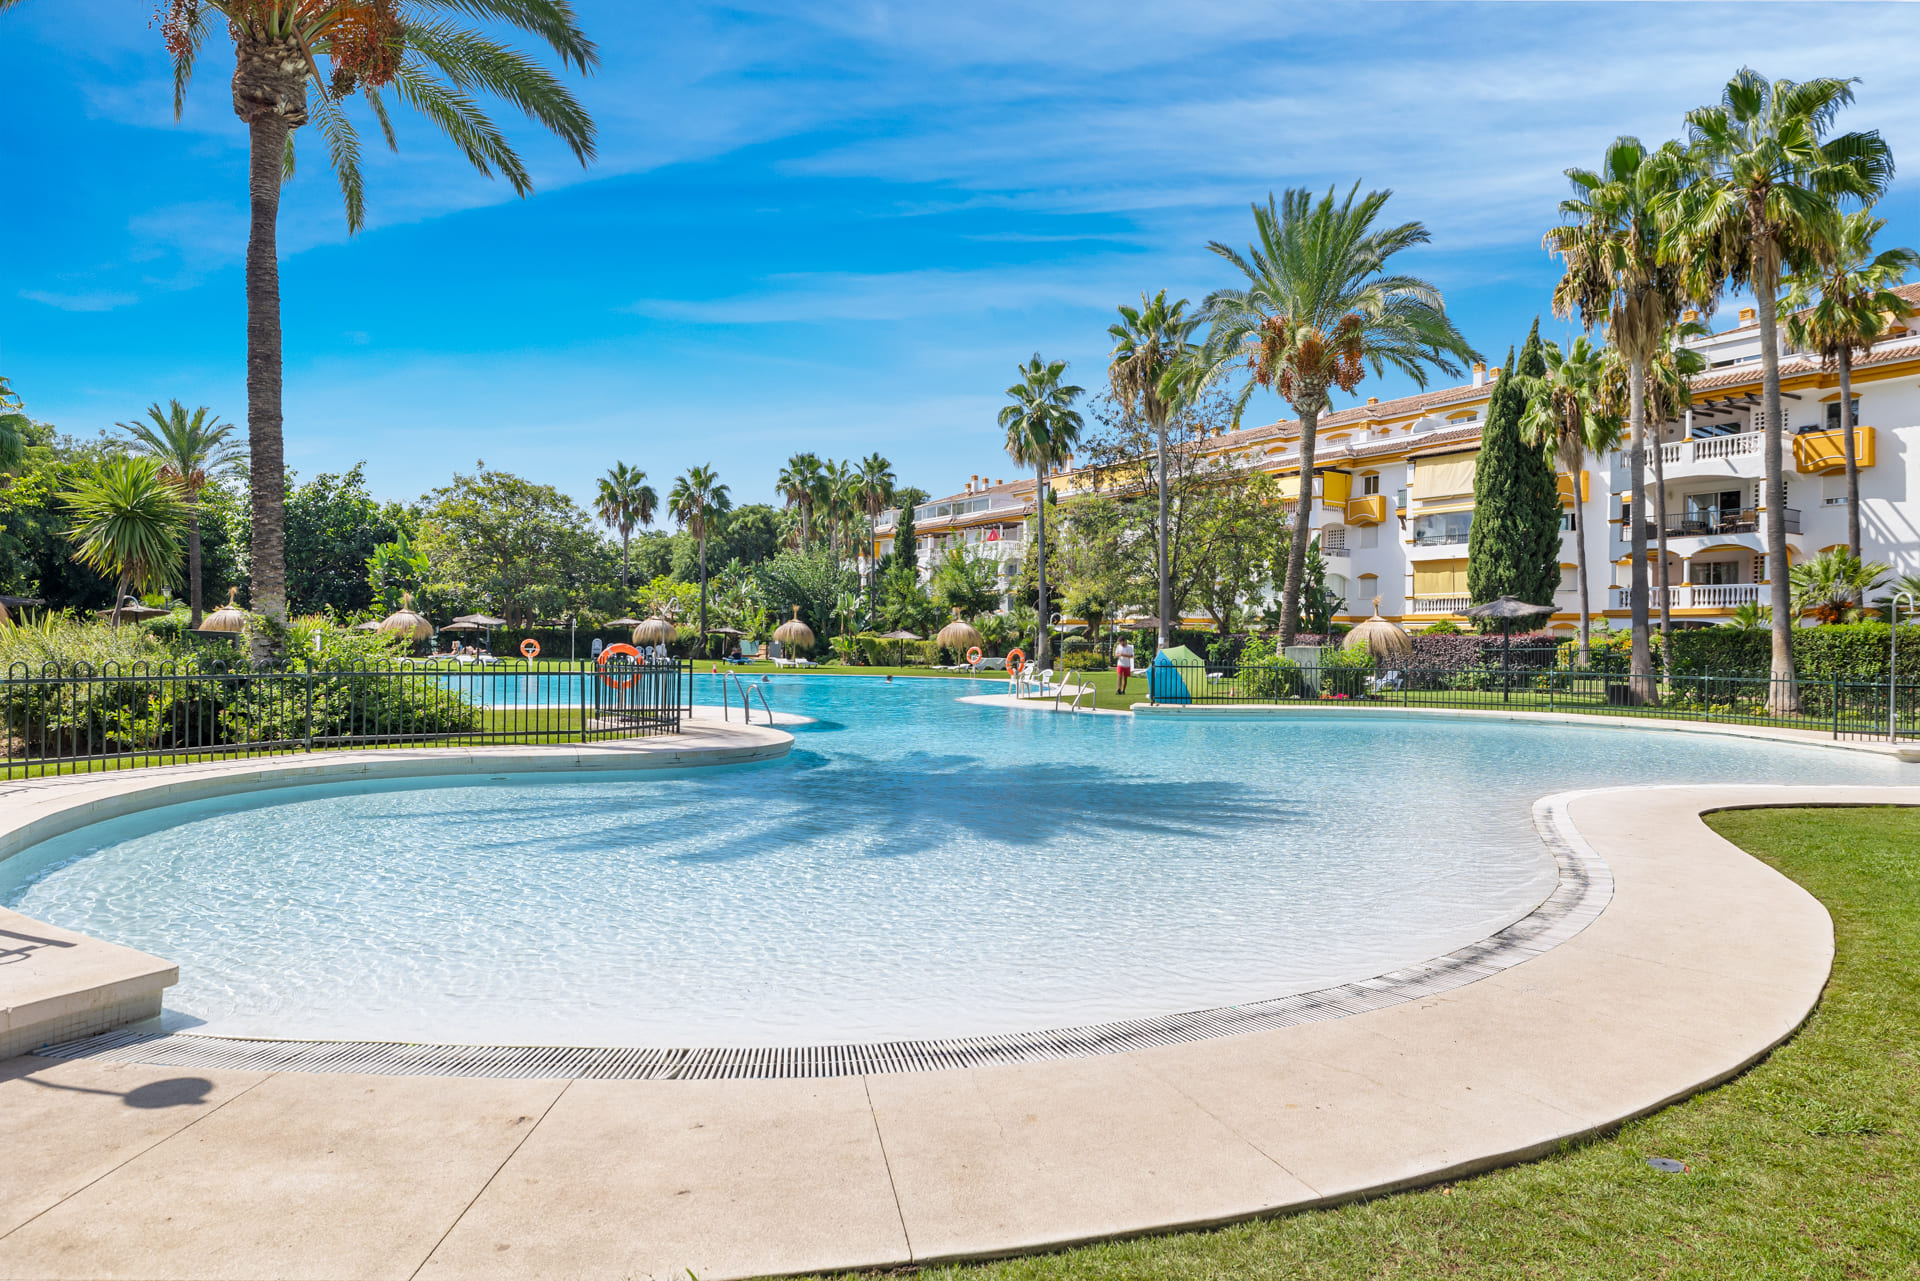 ViVi Real Estate: Spektakuläre Villa zum Verkauf in Marbella mit Panoramablick auf das Meer.